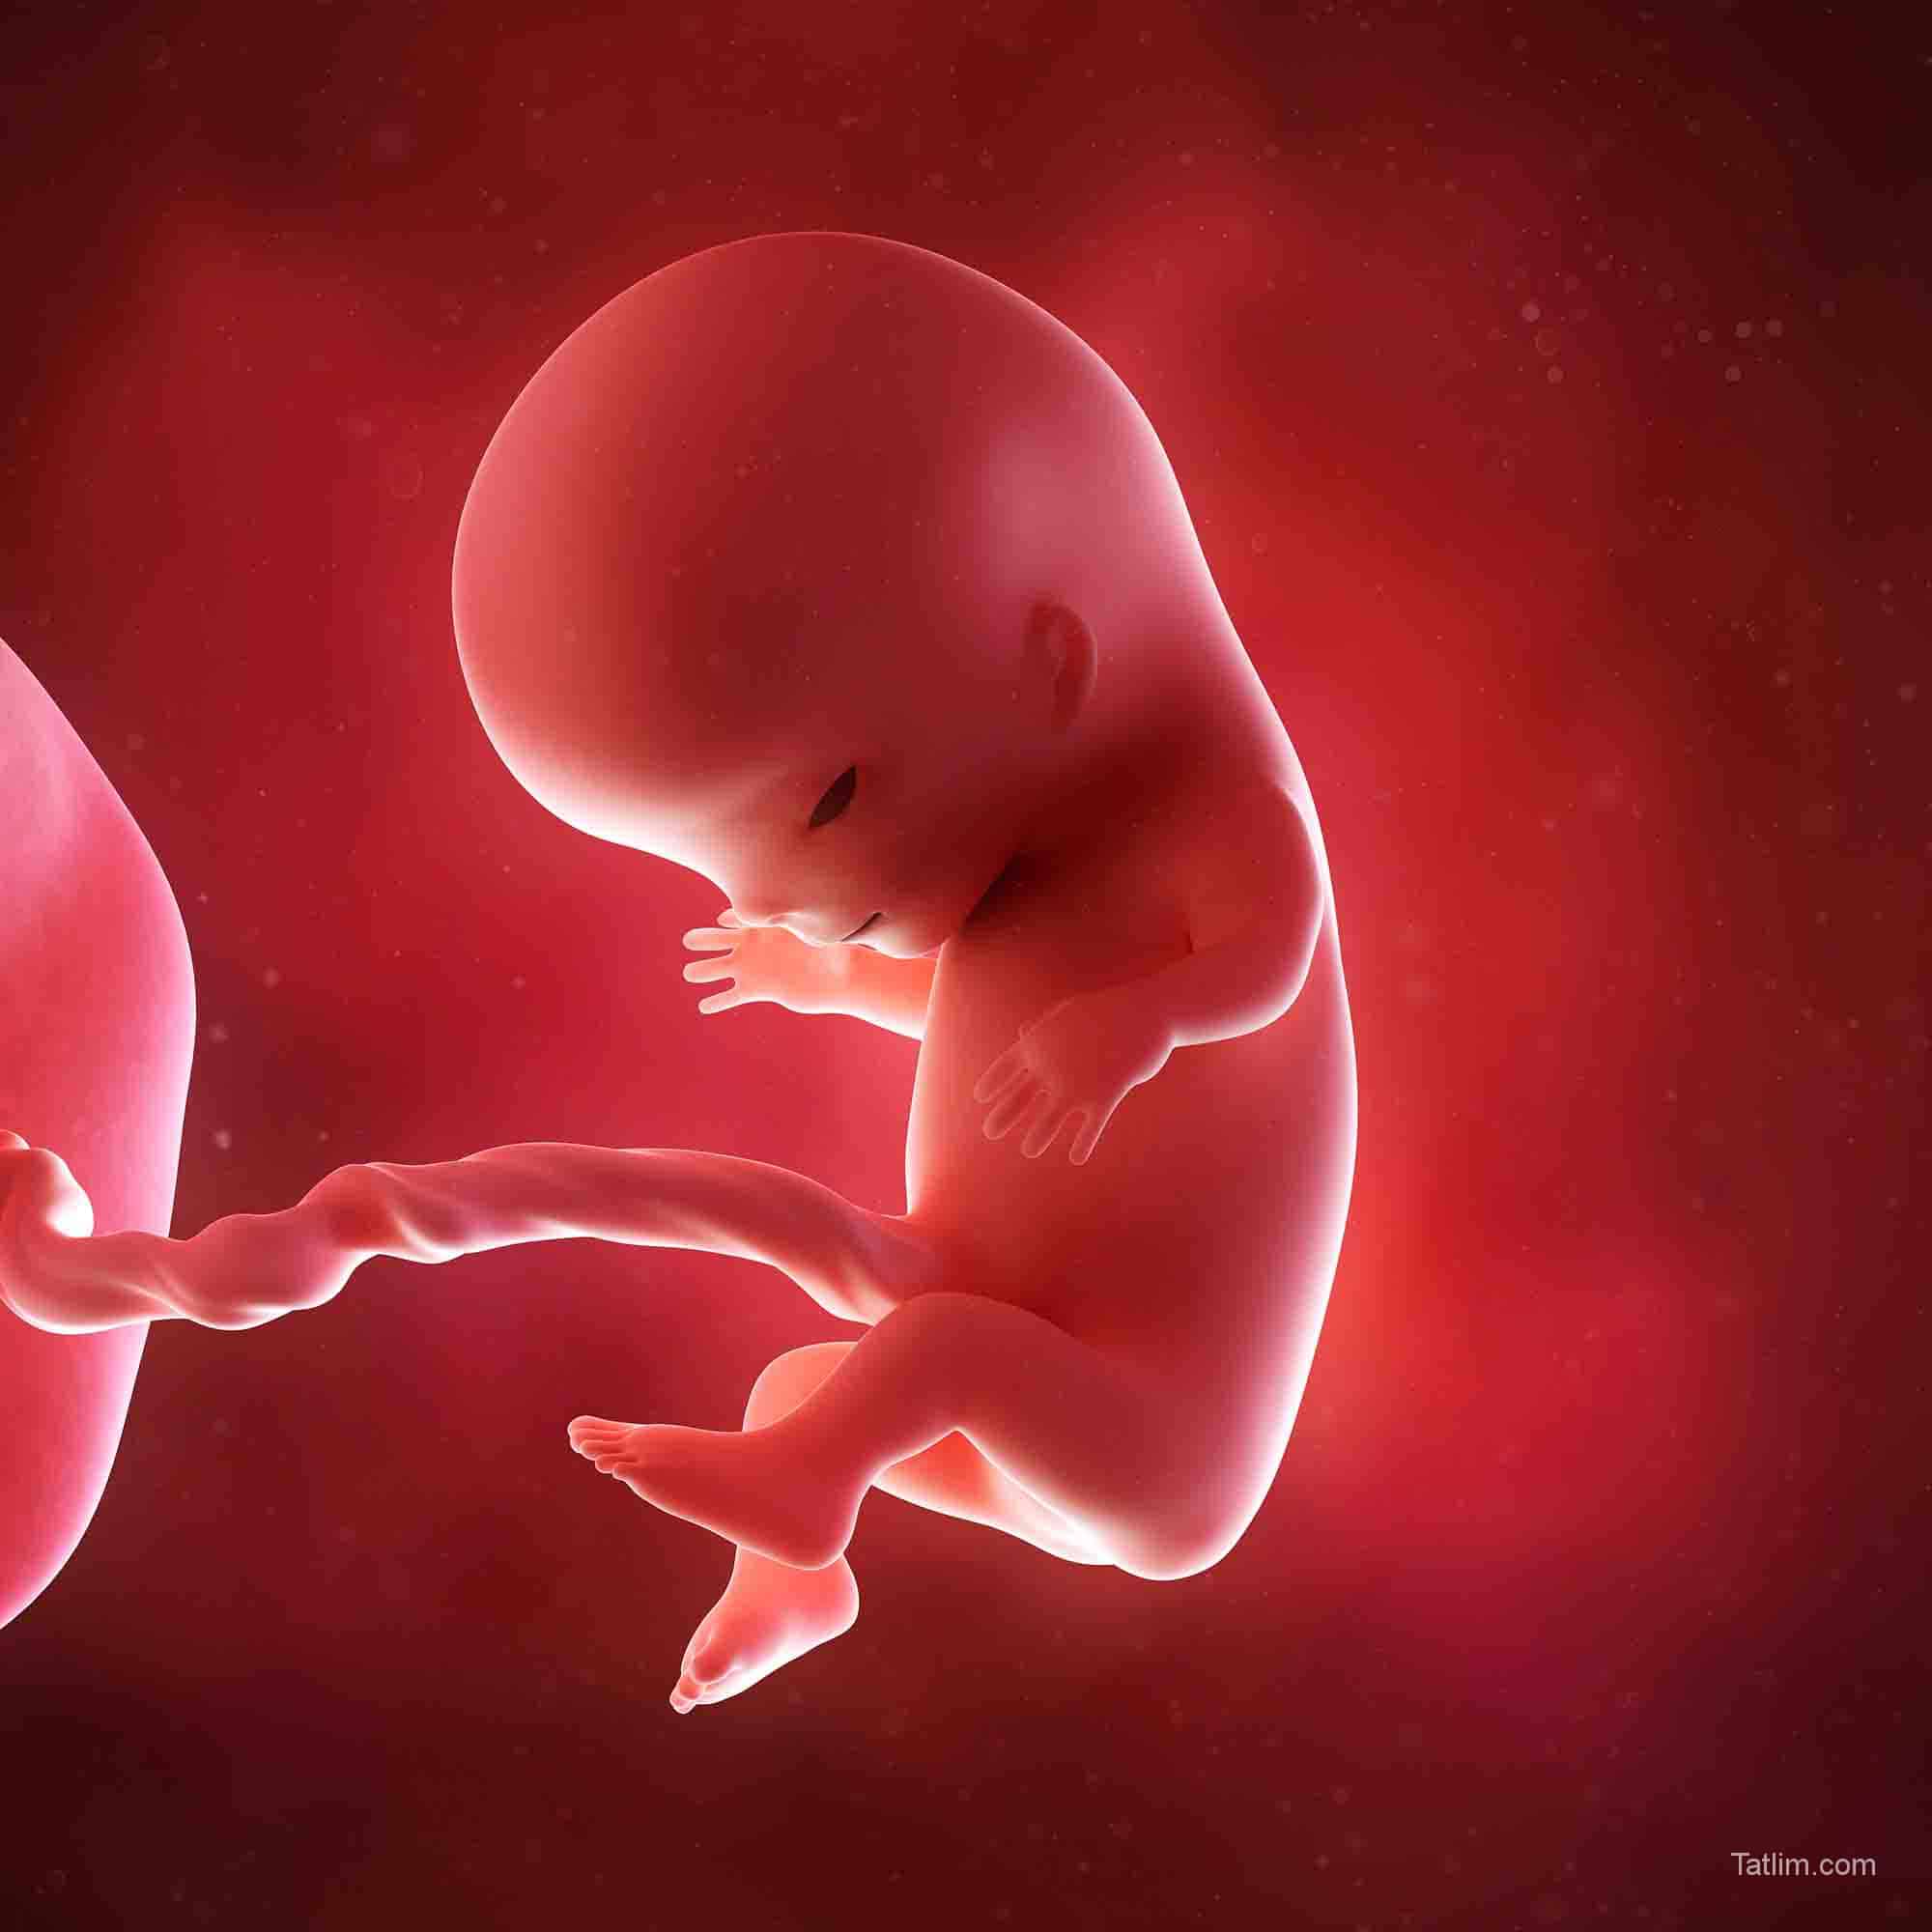 Малыш на 11 неделе. Эмбрион на 11 неделе беременности. Ребёнок 11 недель беременности эмбрион. Плод на 11 акушерской неделе беременности. Плод на 11-12 неделе беременности.